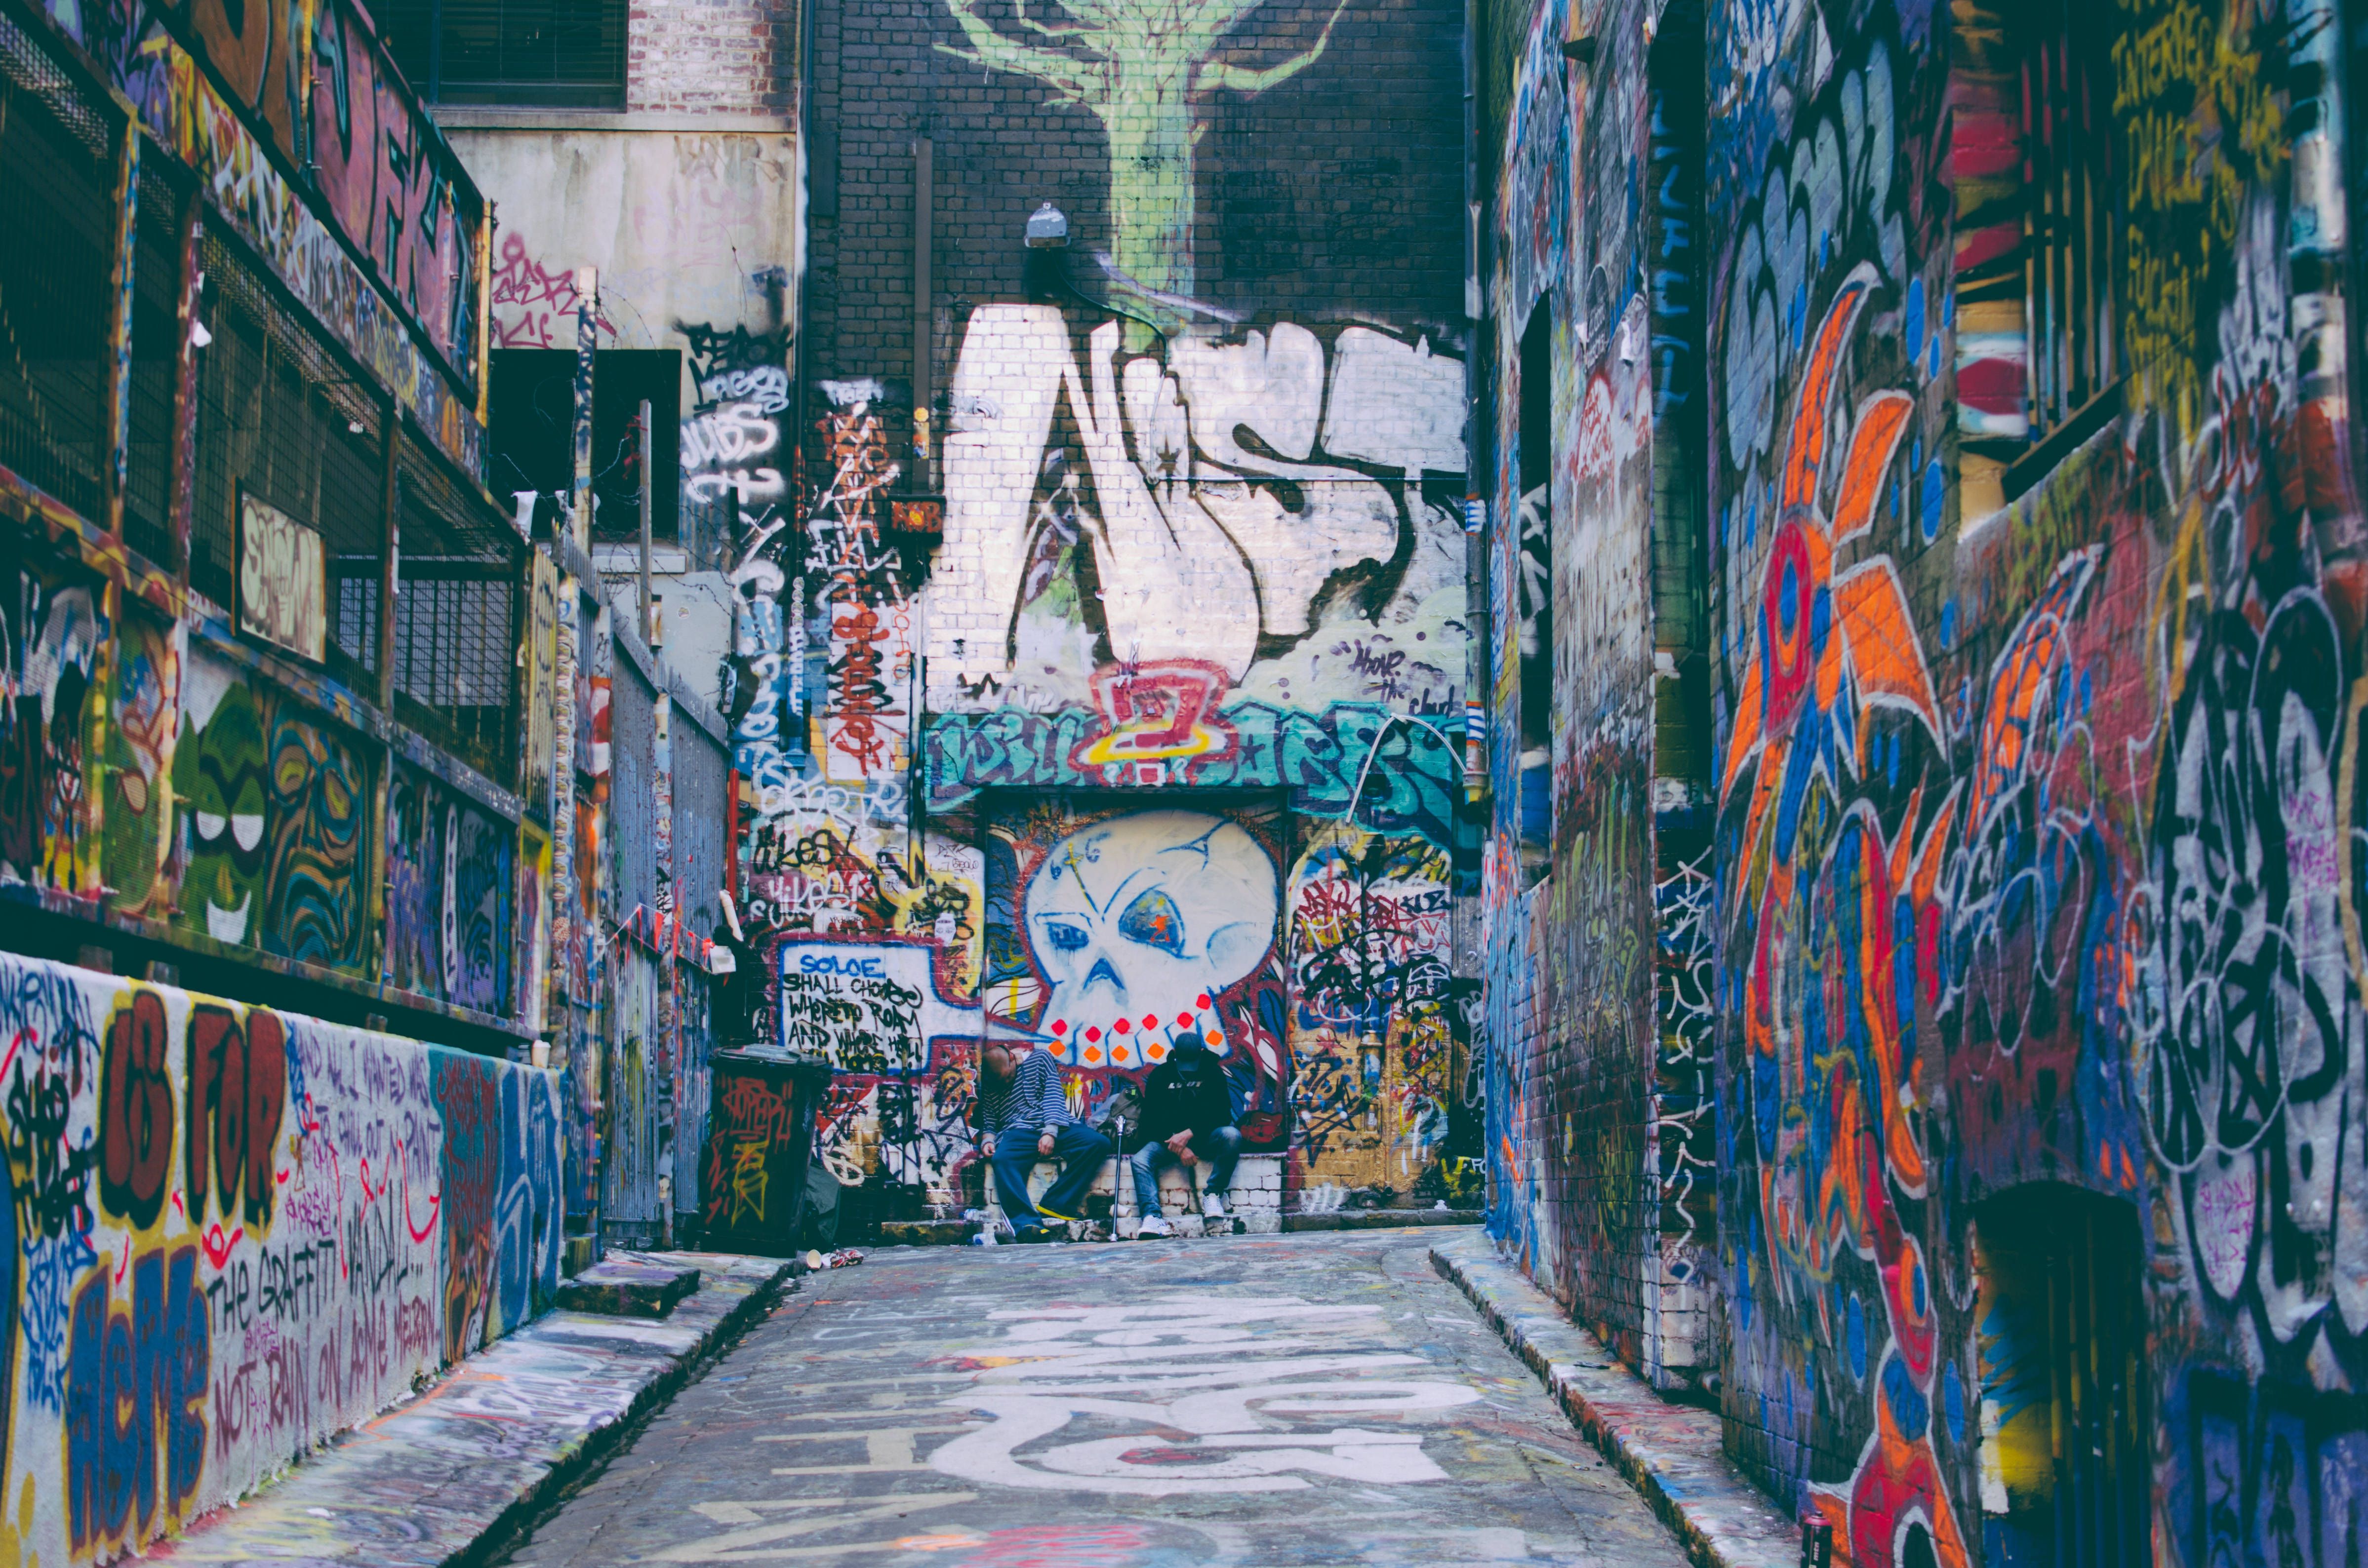 A street with graffiti on the walls - Graffiti, street art